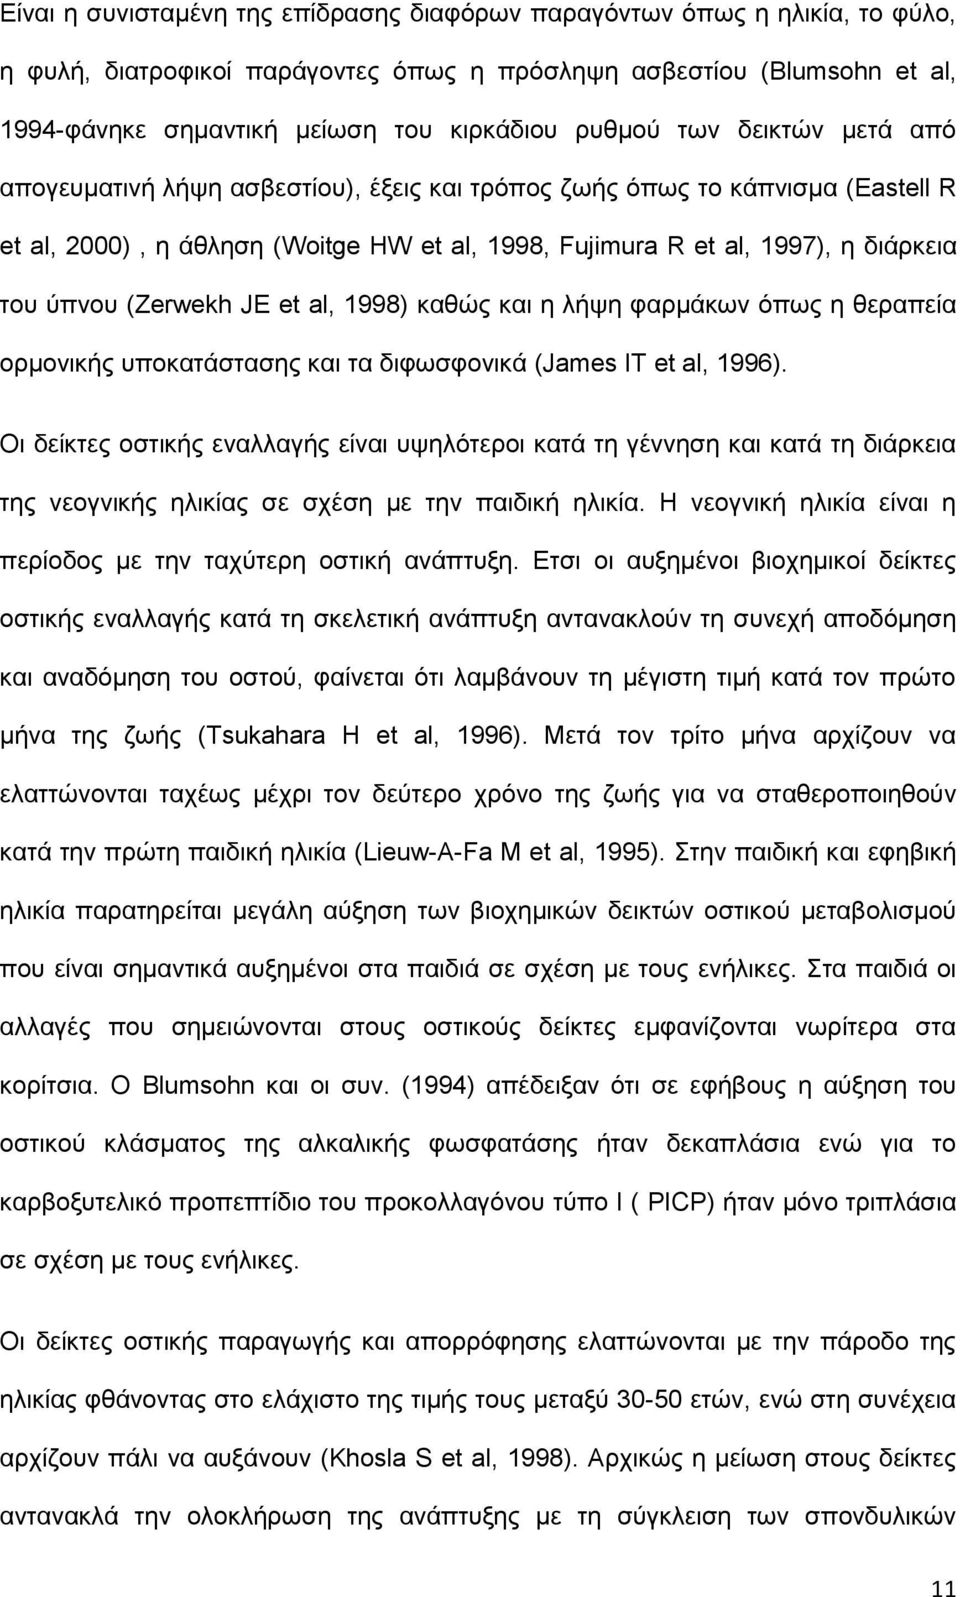 ύπνου (Zerwekh JE et al, 1998) καθώς και η λήψη φαρμάκων όπως η θεραπεία ορμονικής υποκατάστασης και τα διφωσφονικά (James IT et al, 1996).